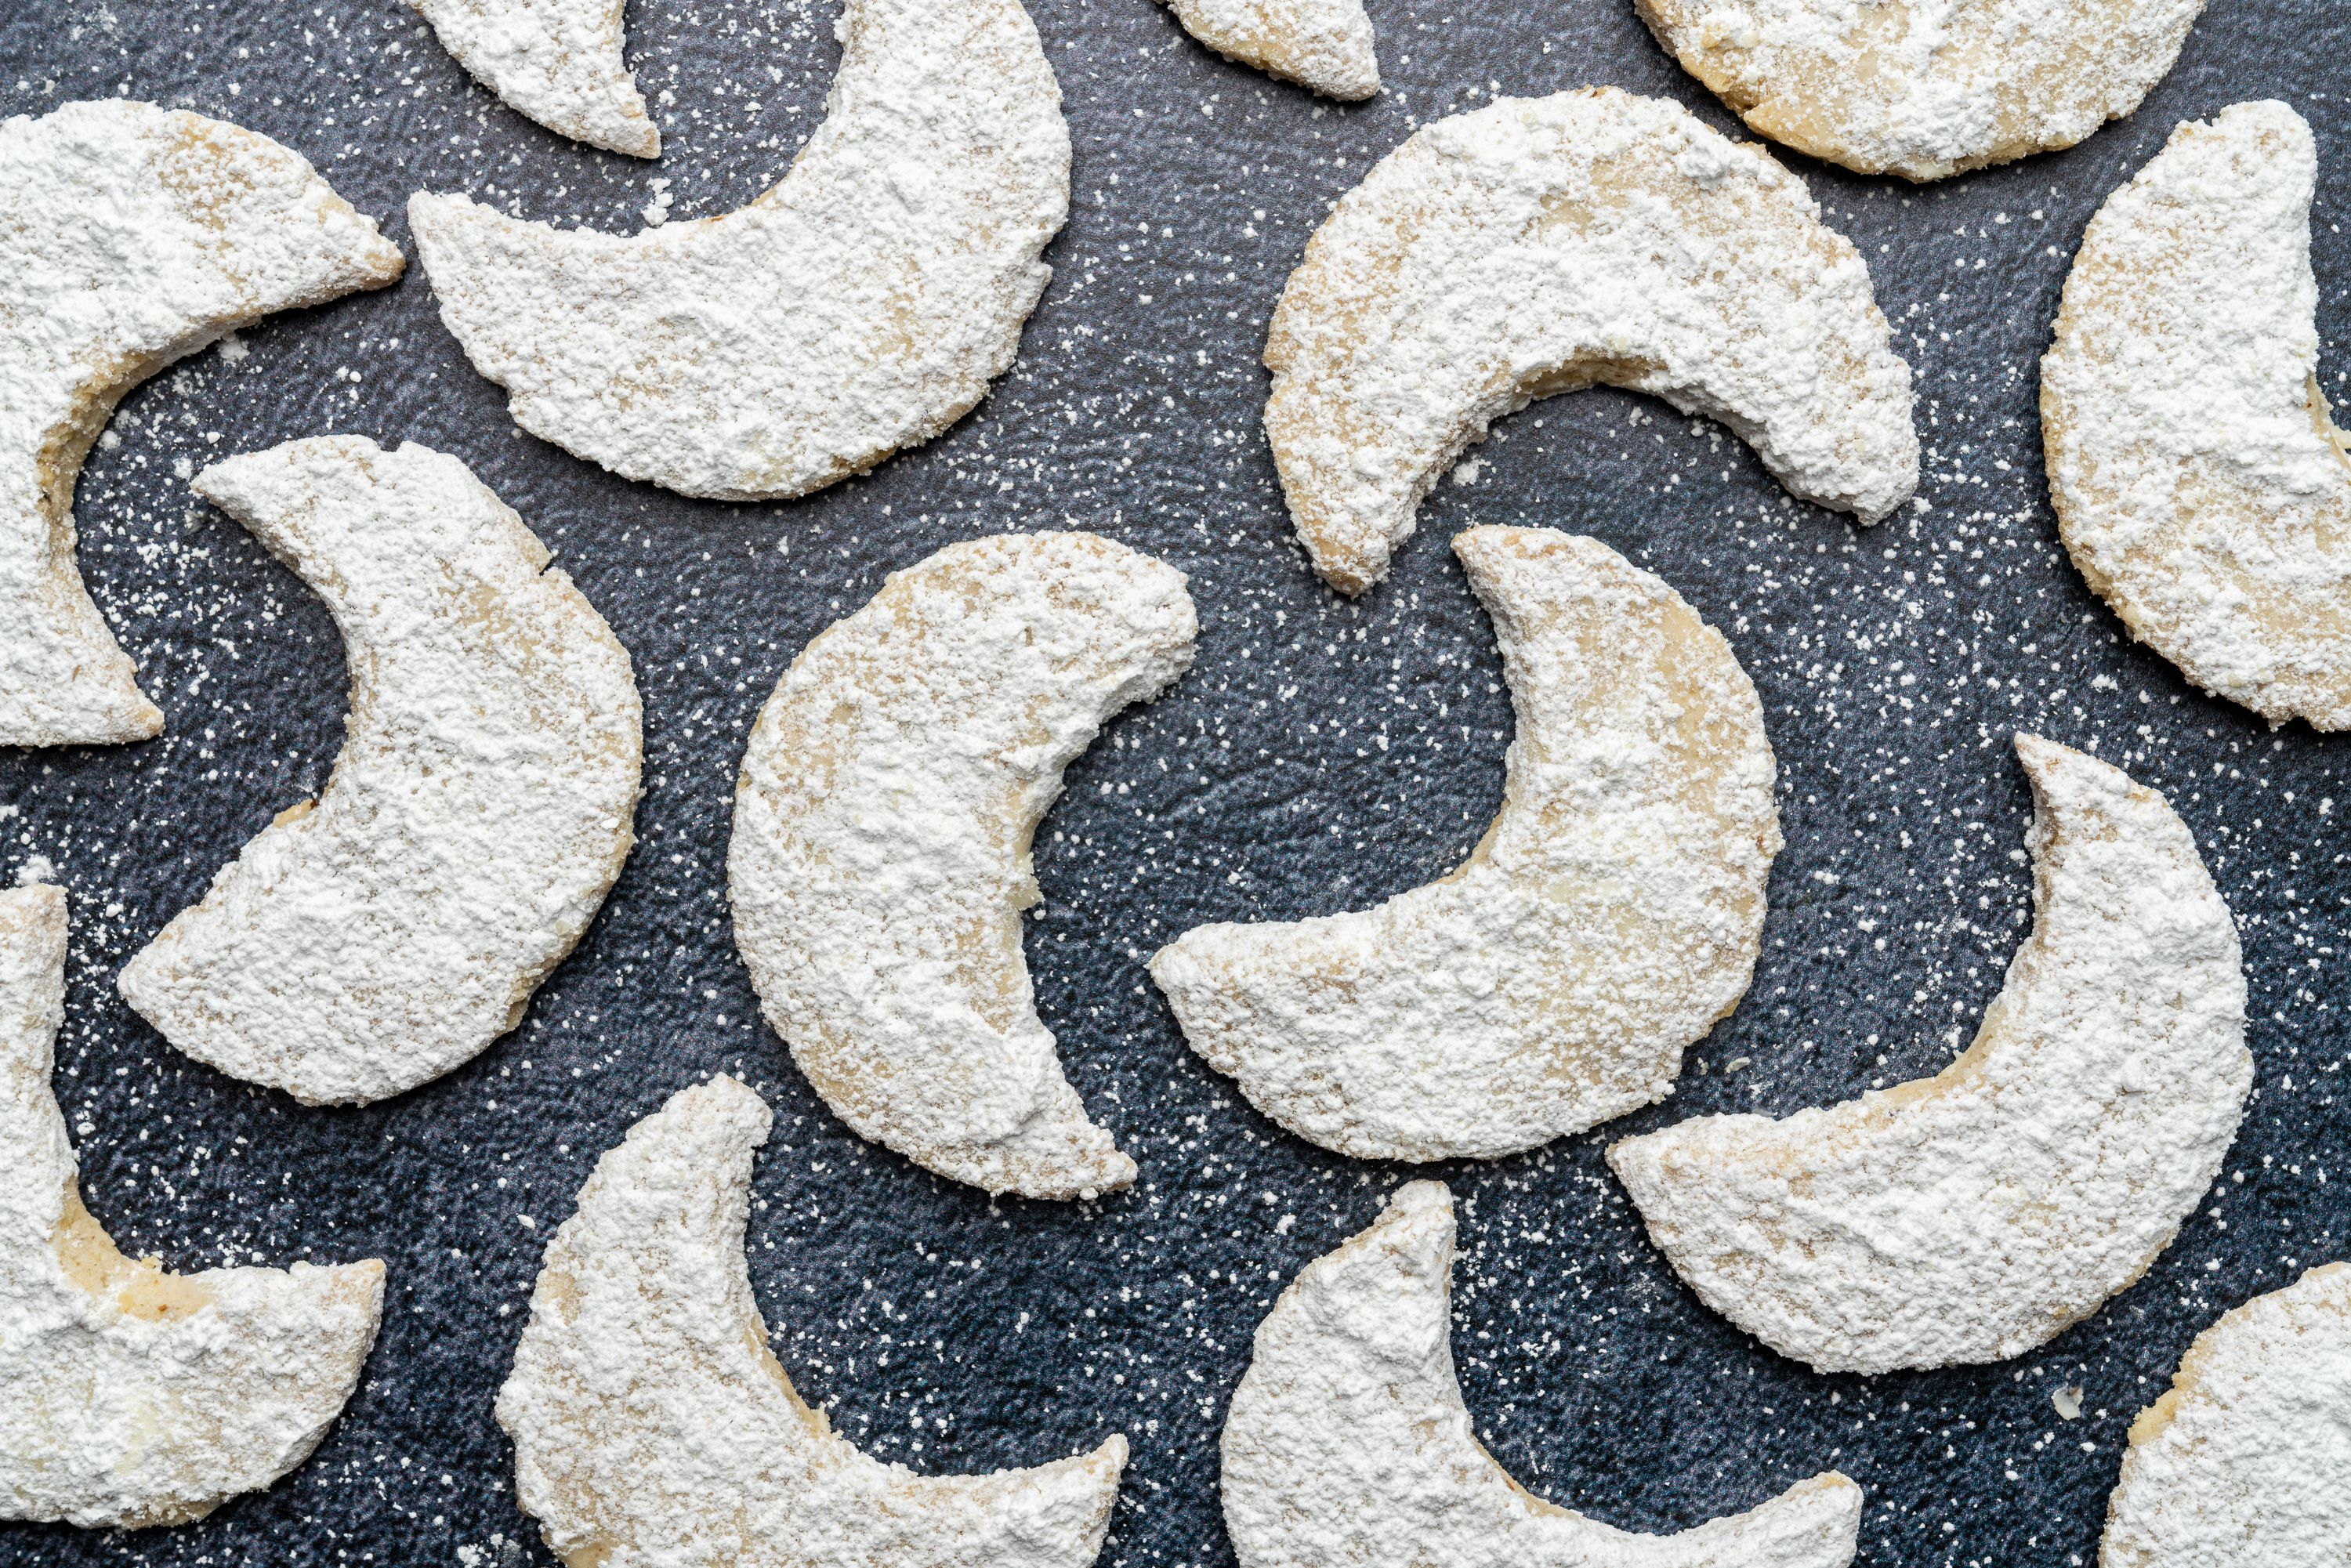 Walnut Crescent Cookies